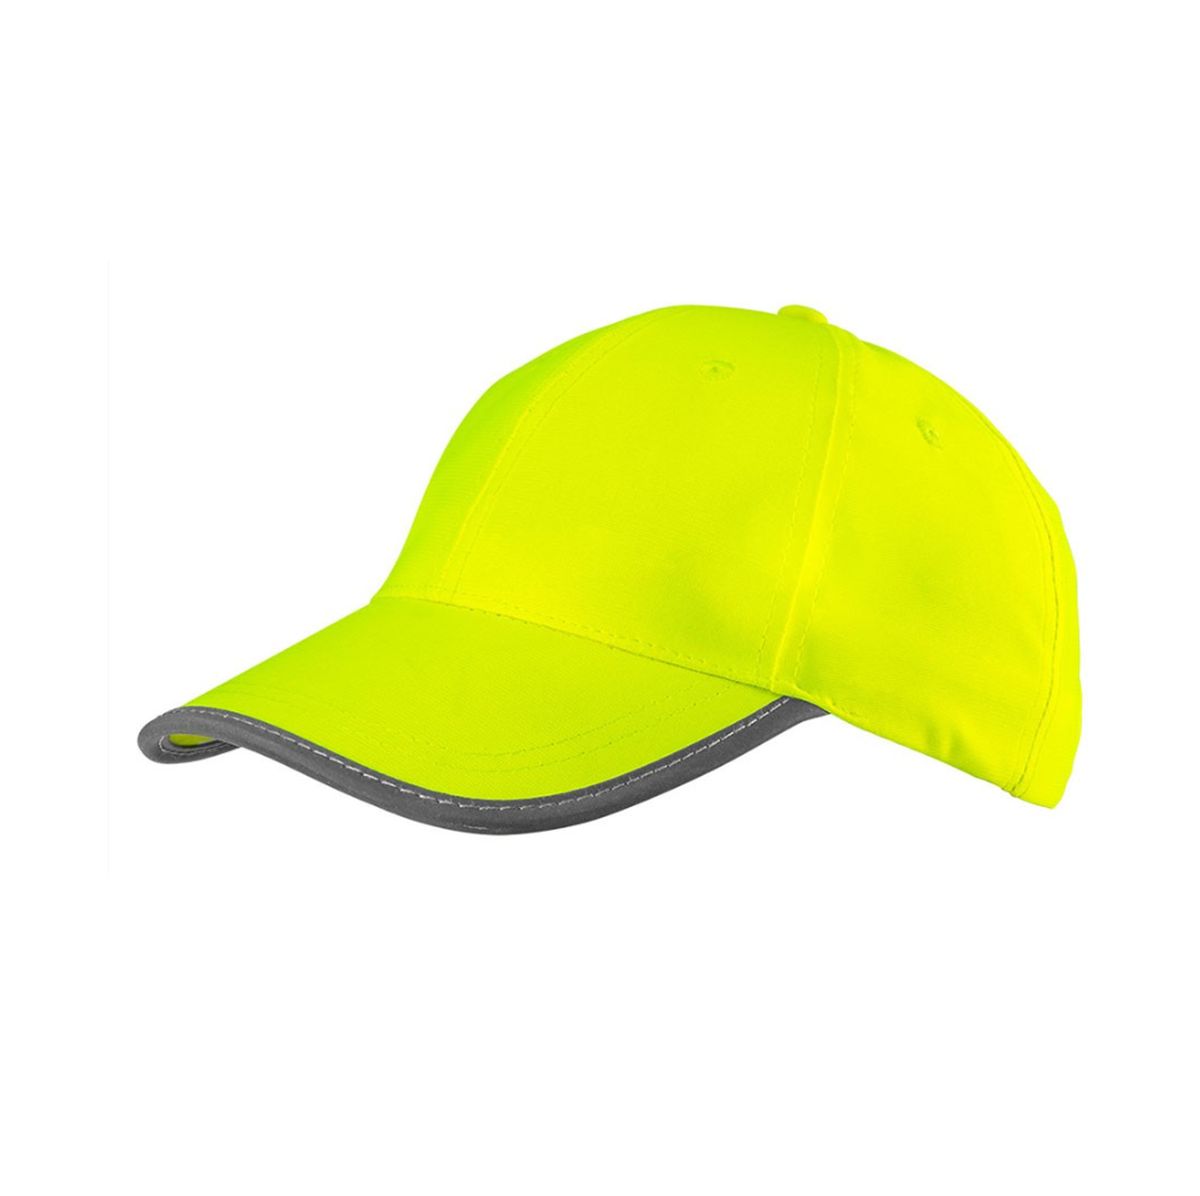 Καπέλο υψηλής ευκρίνειας κίτρινο 81-793 NEO TOOL